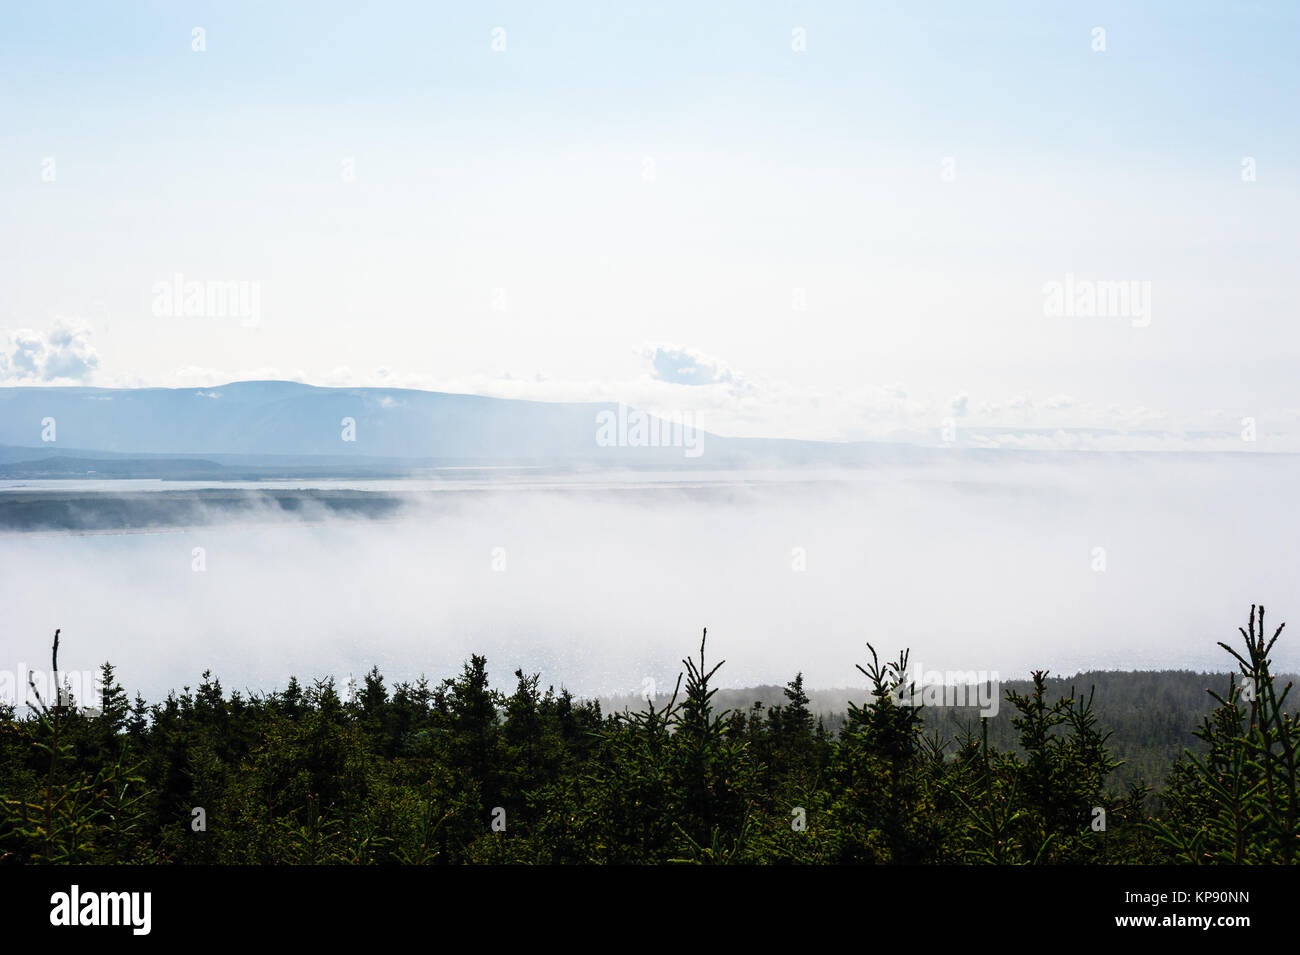 Brouillard faible entre les arbres et les montagnes lointaines Banque D'Images